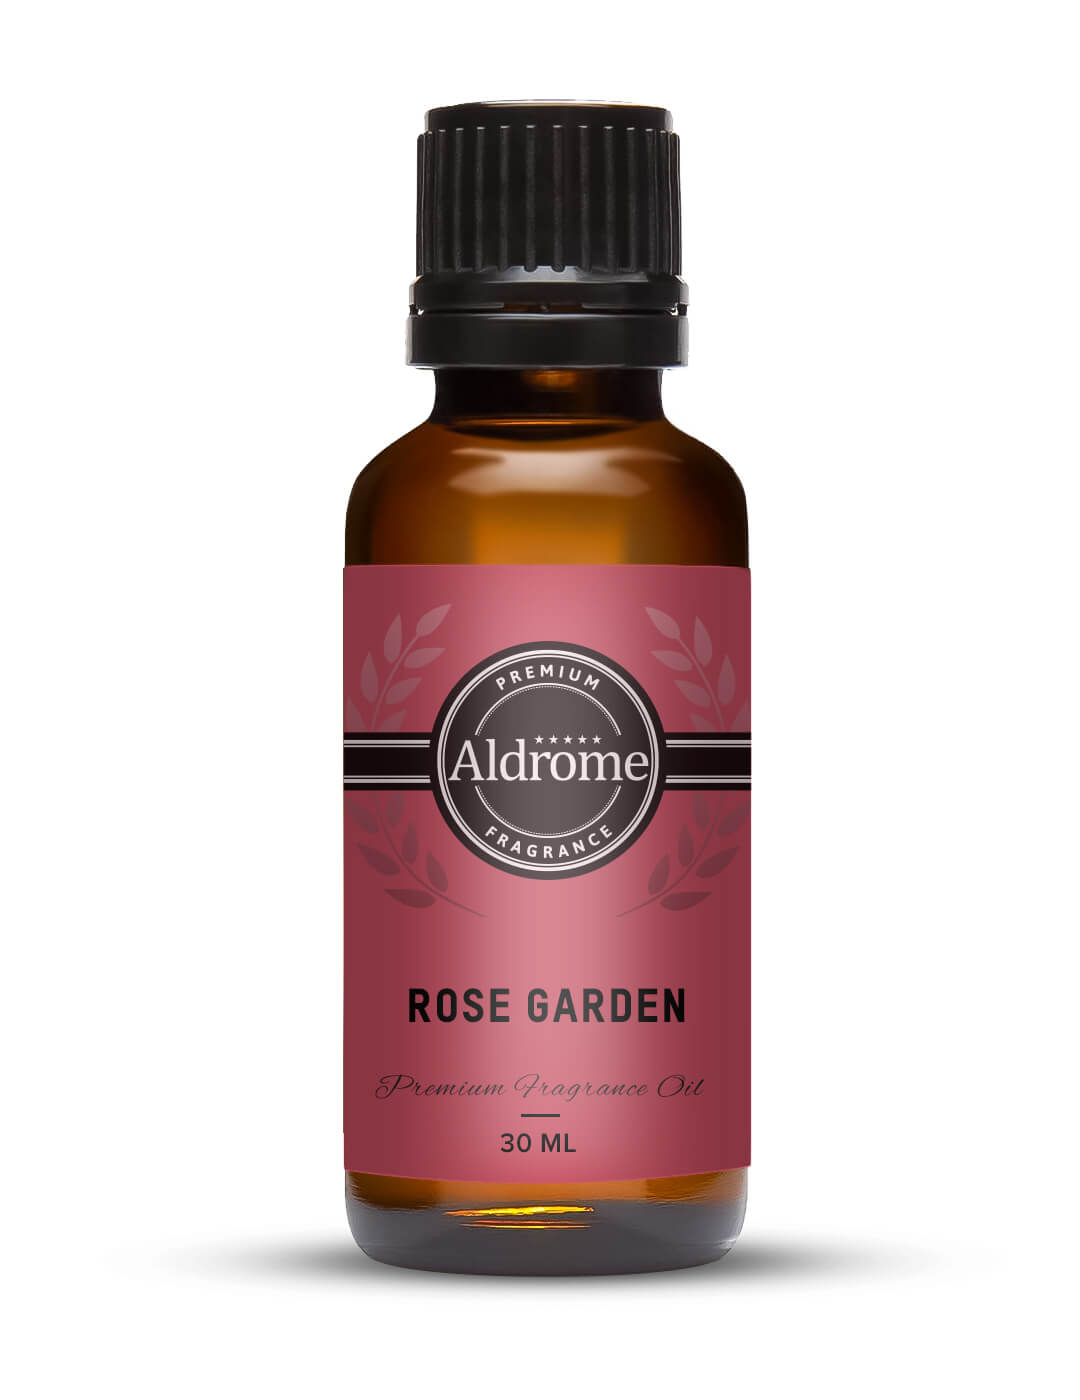 Rose Garden Fragrance Oil - 30ml | Buy Rose Garden Fragrance Oils Online at Best Prices